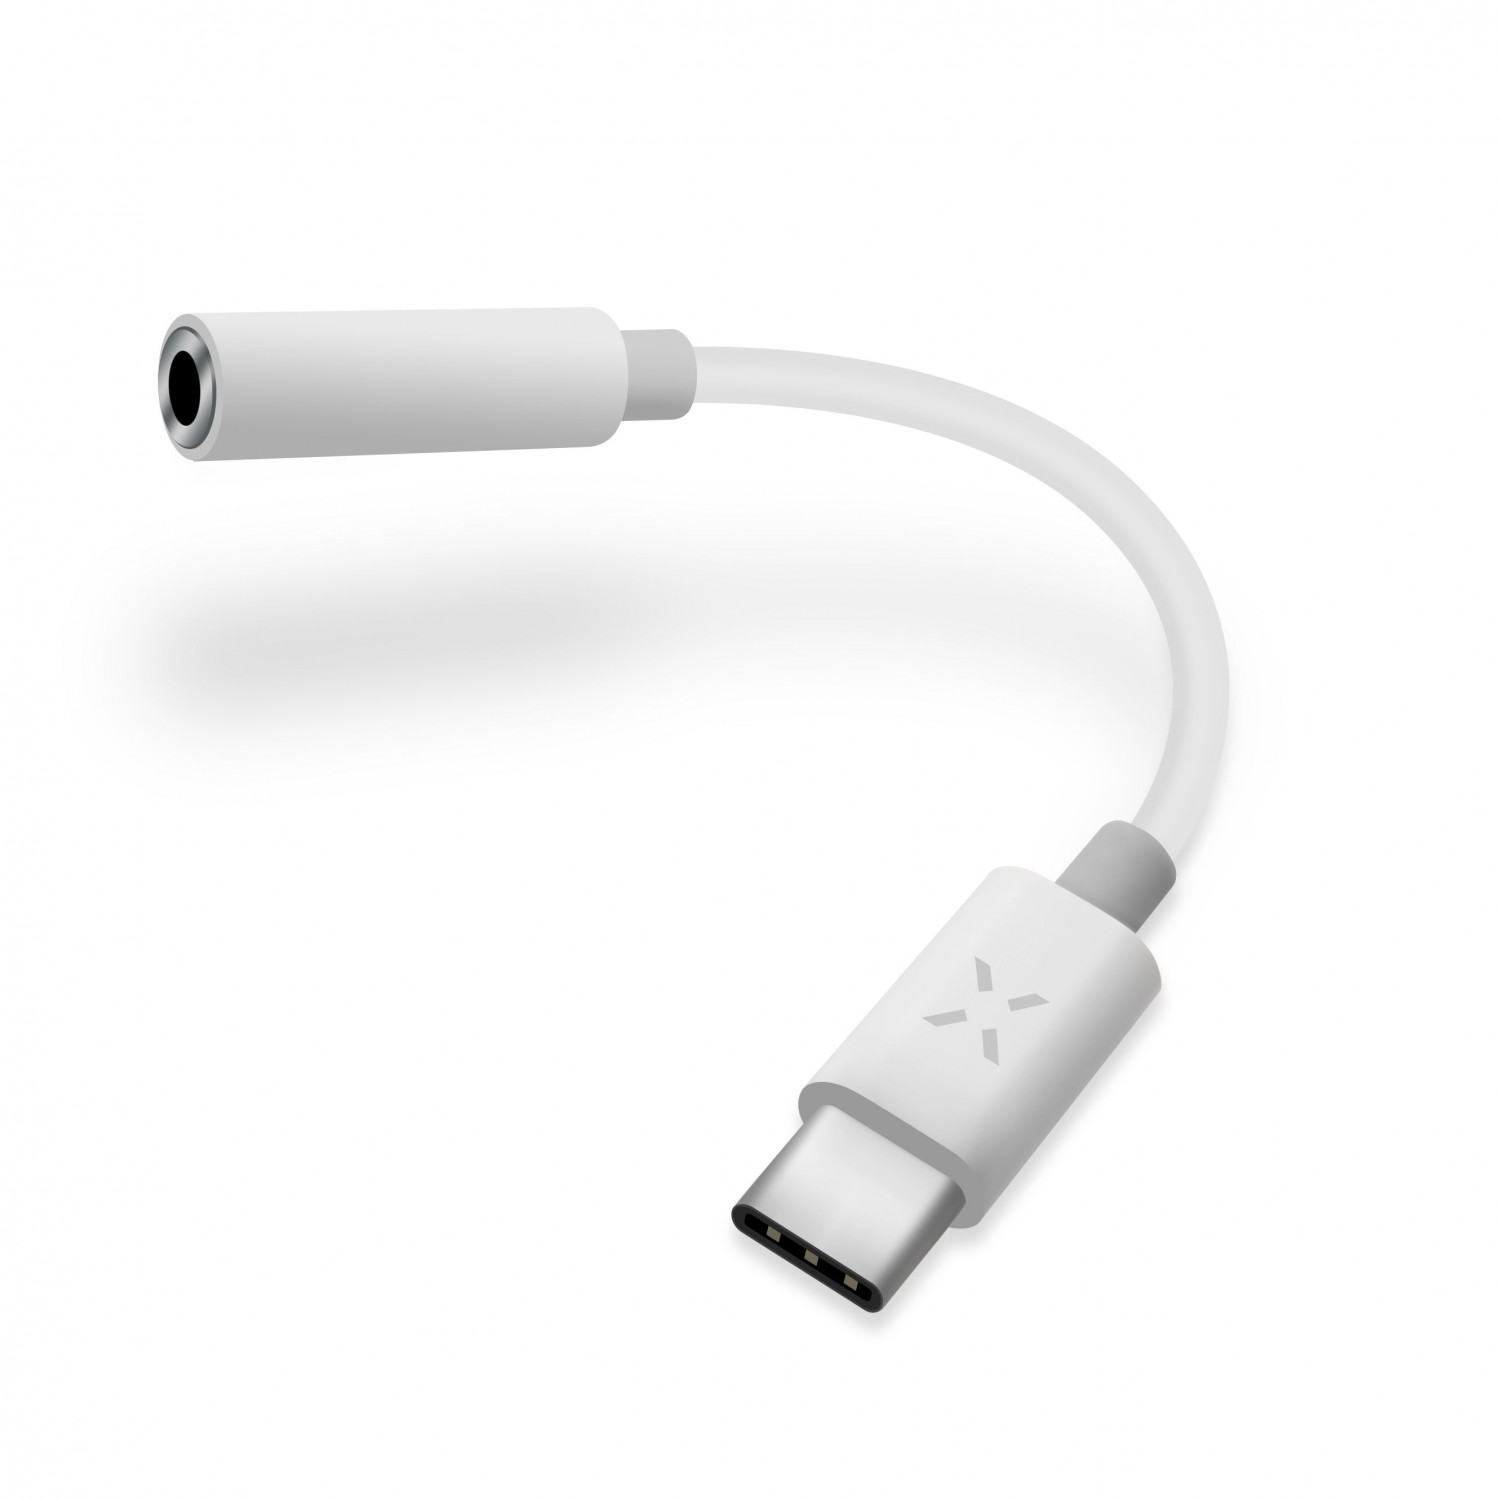 Redukce FIXED LINK pro připojení sluchátek z USB-C/ 3,5mm jack s DAC chipem, bílá